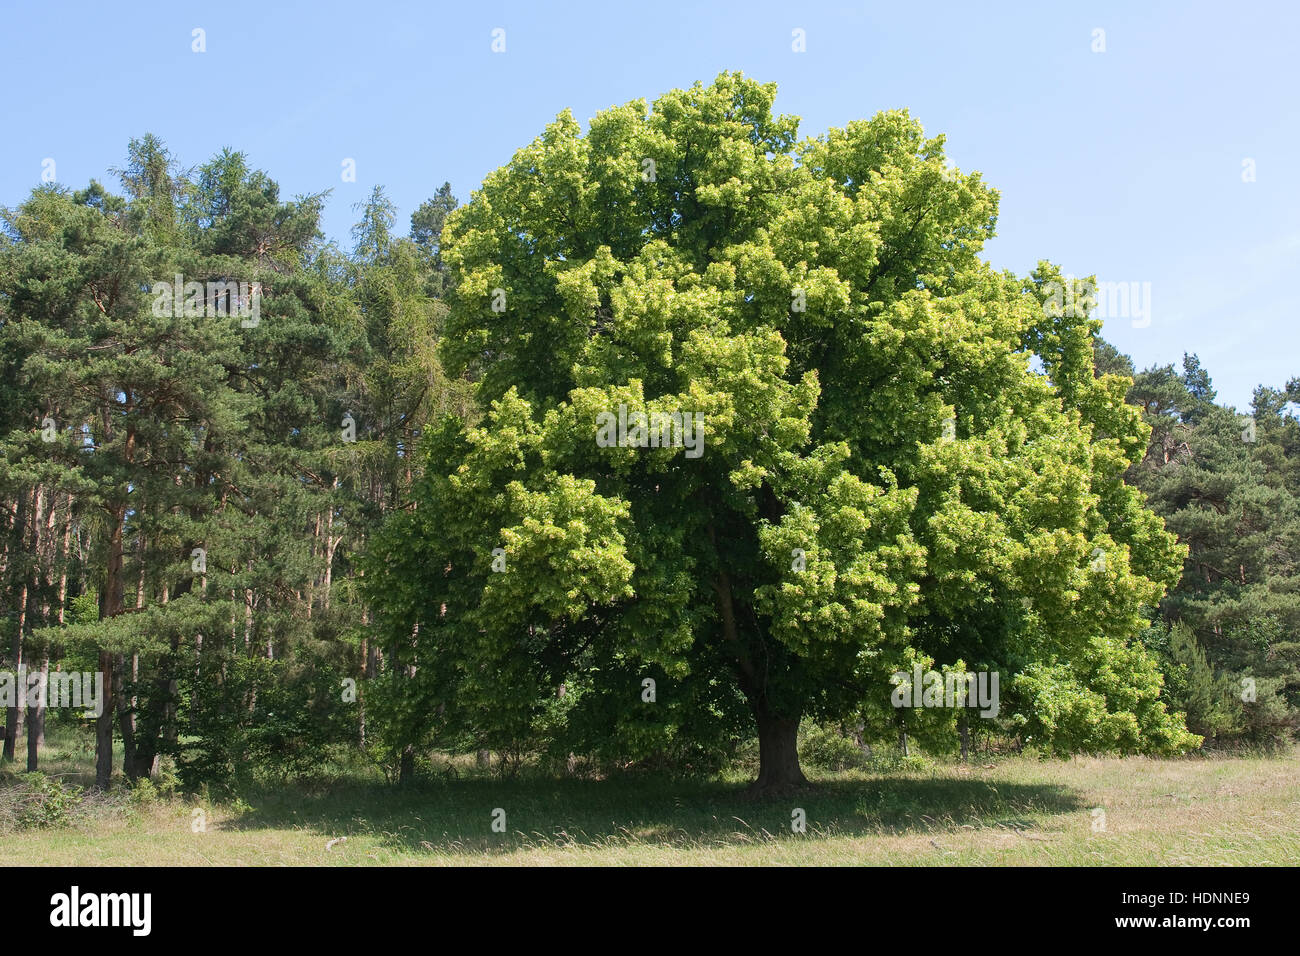 Sommer-Linde, Sommerlinde, Linde, Tilia platyphyllos, Large Leaved Lime Stock Photo